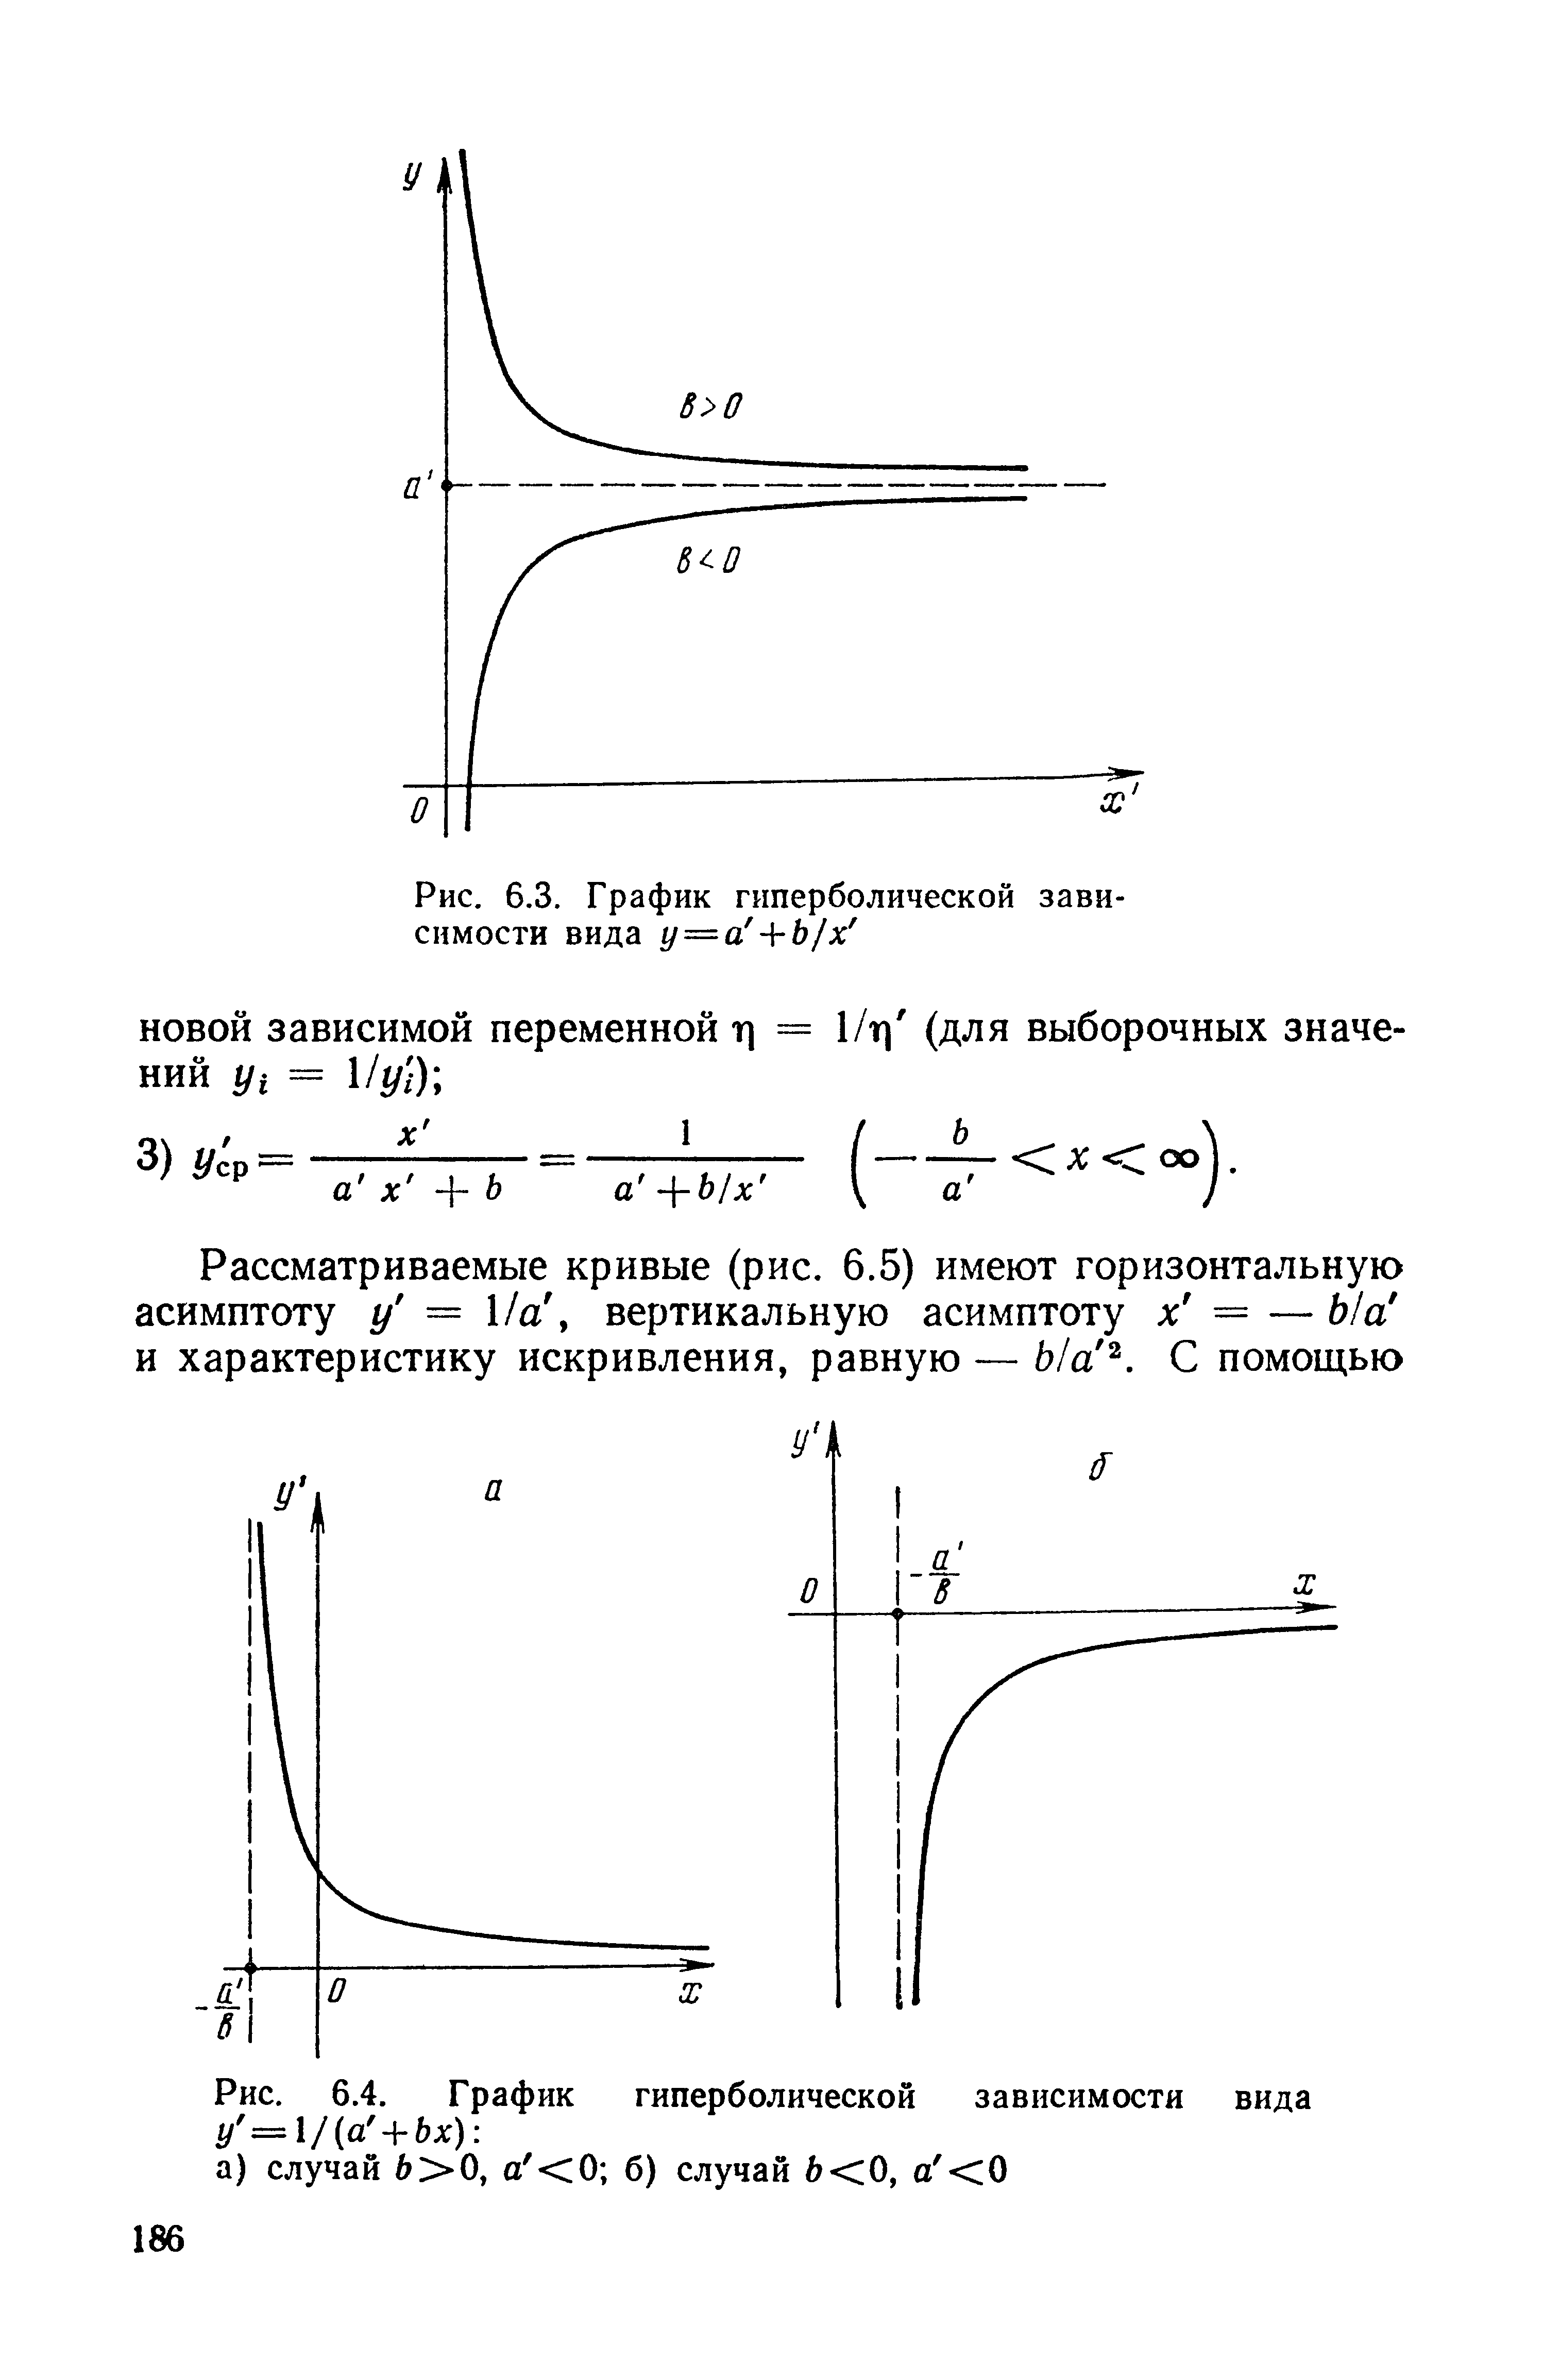 Рис. 6.4. График гиперболической зависимости вида а) случай 6>0, а <0 б) случай 6<0, а <0
